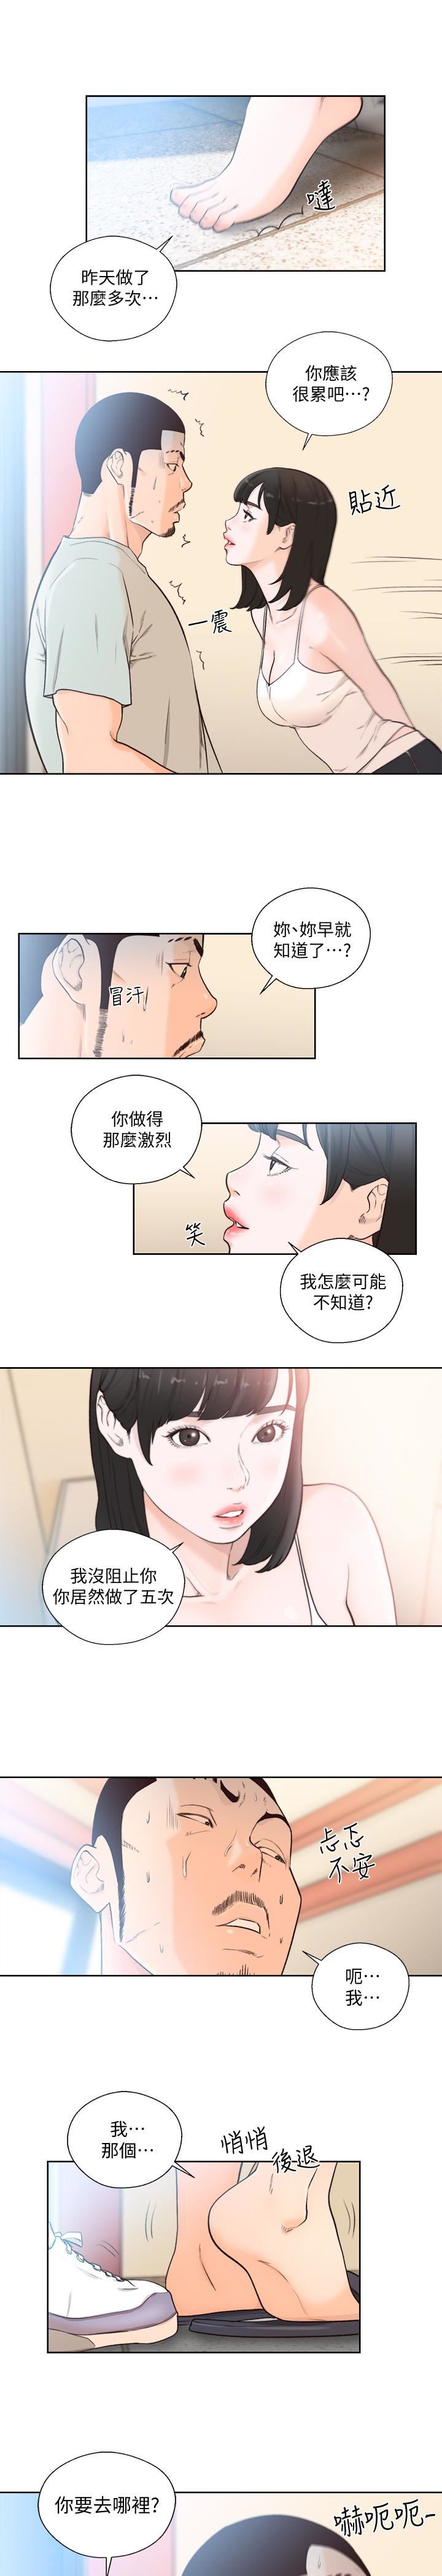 韩国污漫画 解禁:初始的快感 最终话-幸福的方法 2